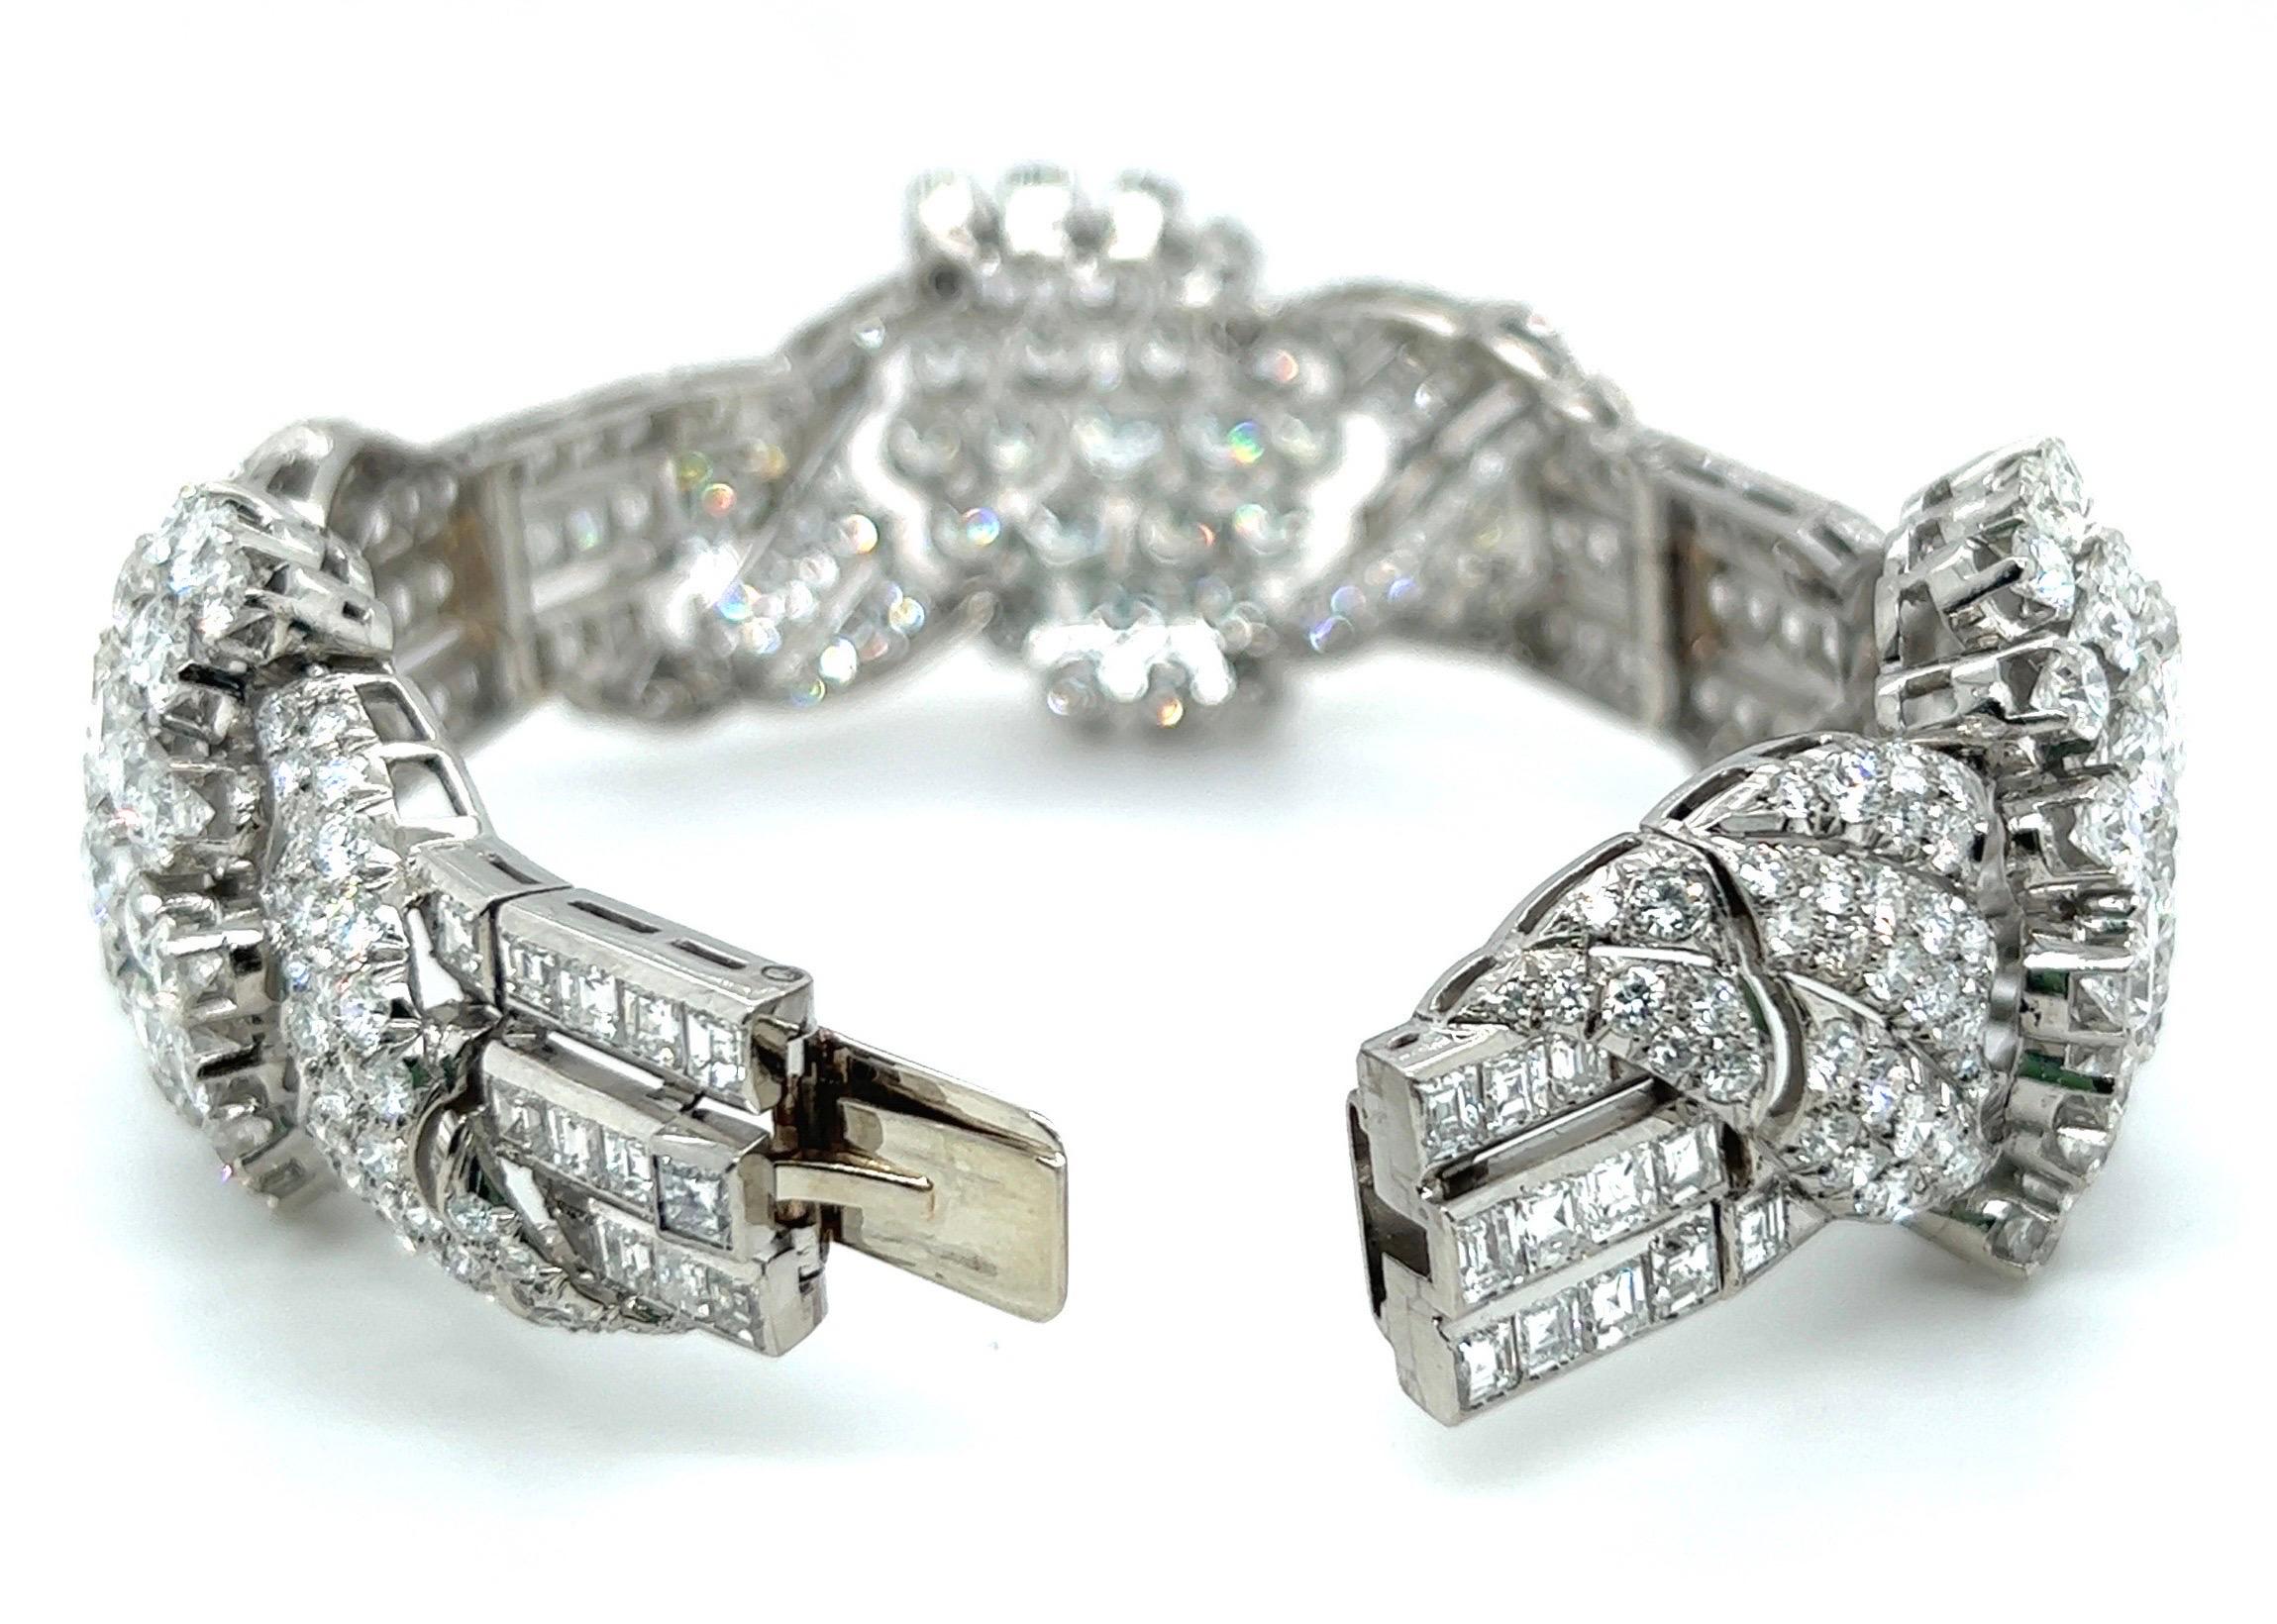 Brilliant Cut 25 Carat Diamond and Platinum Cocktail Bracelet, circa 1950s